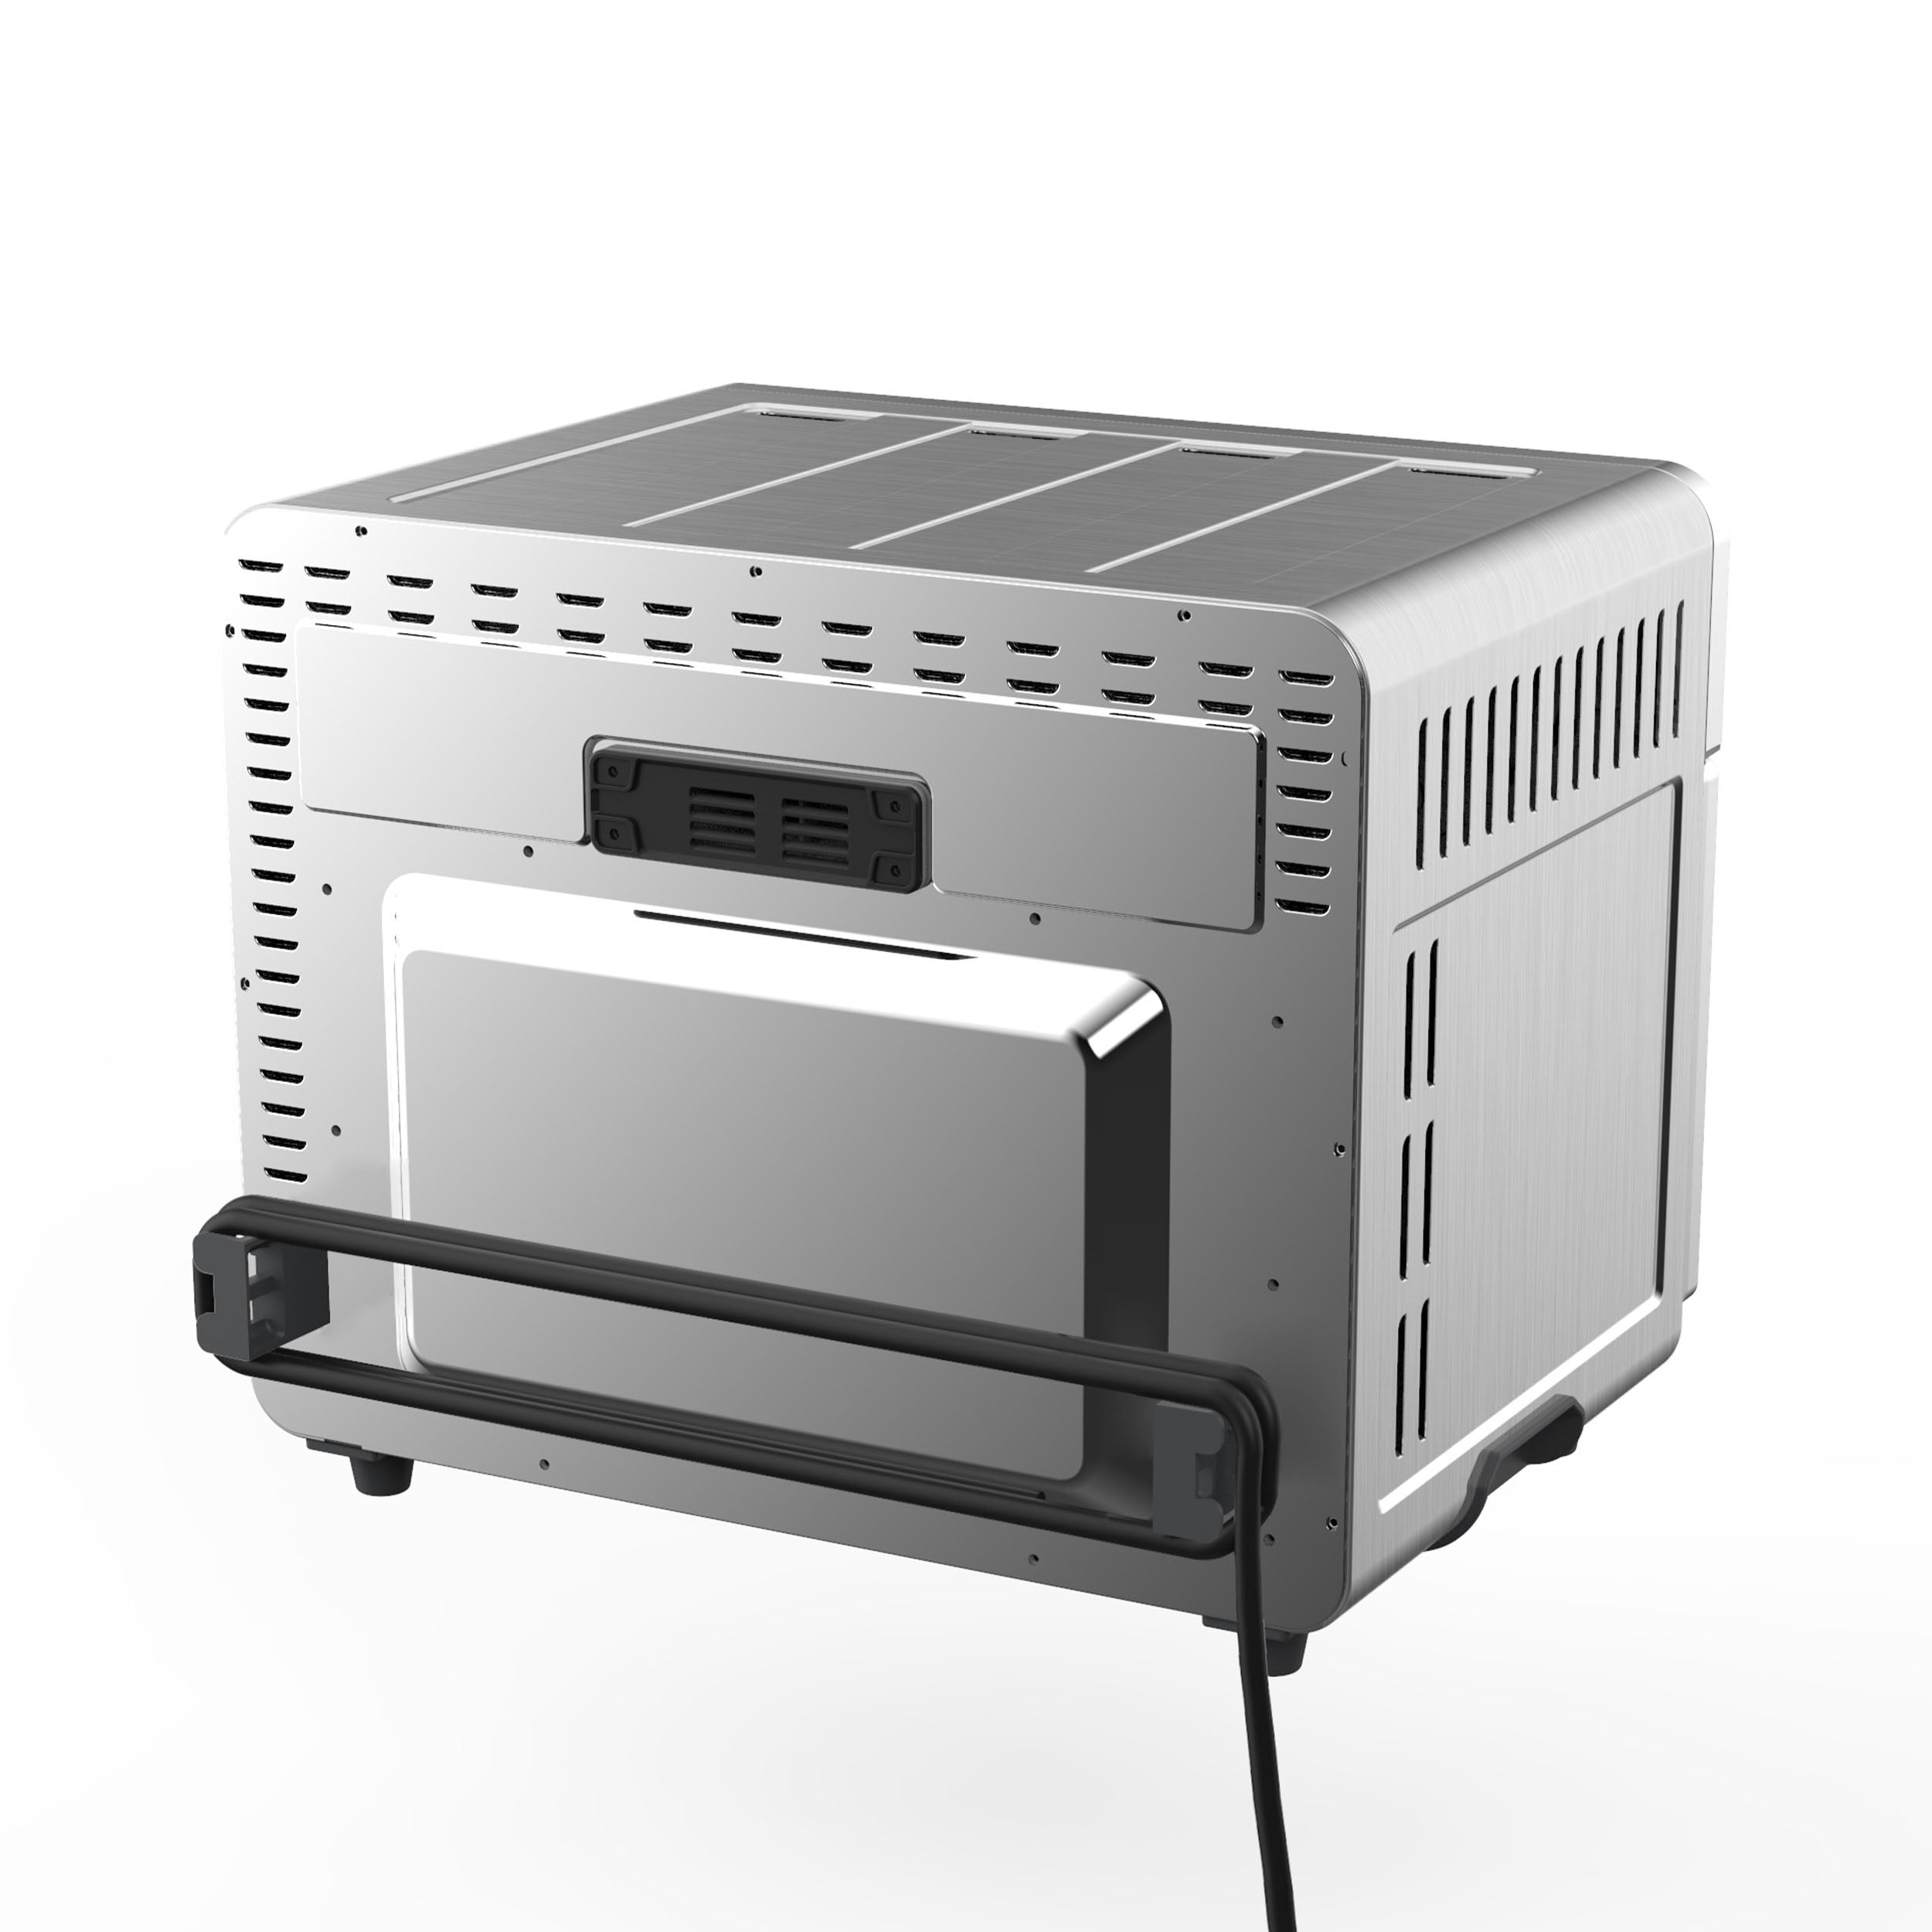 WUJIJIA™ 110 Volt 500 Watt Countertop Convection Oven